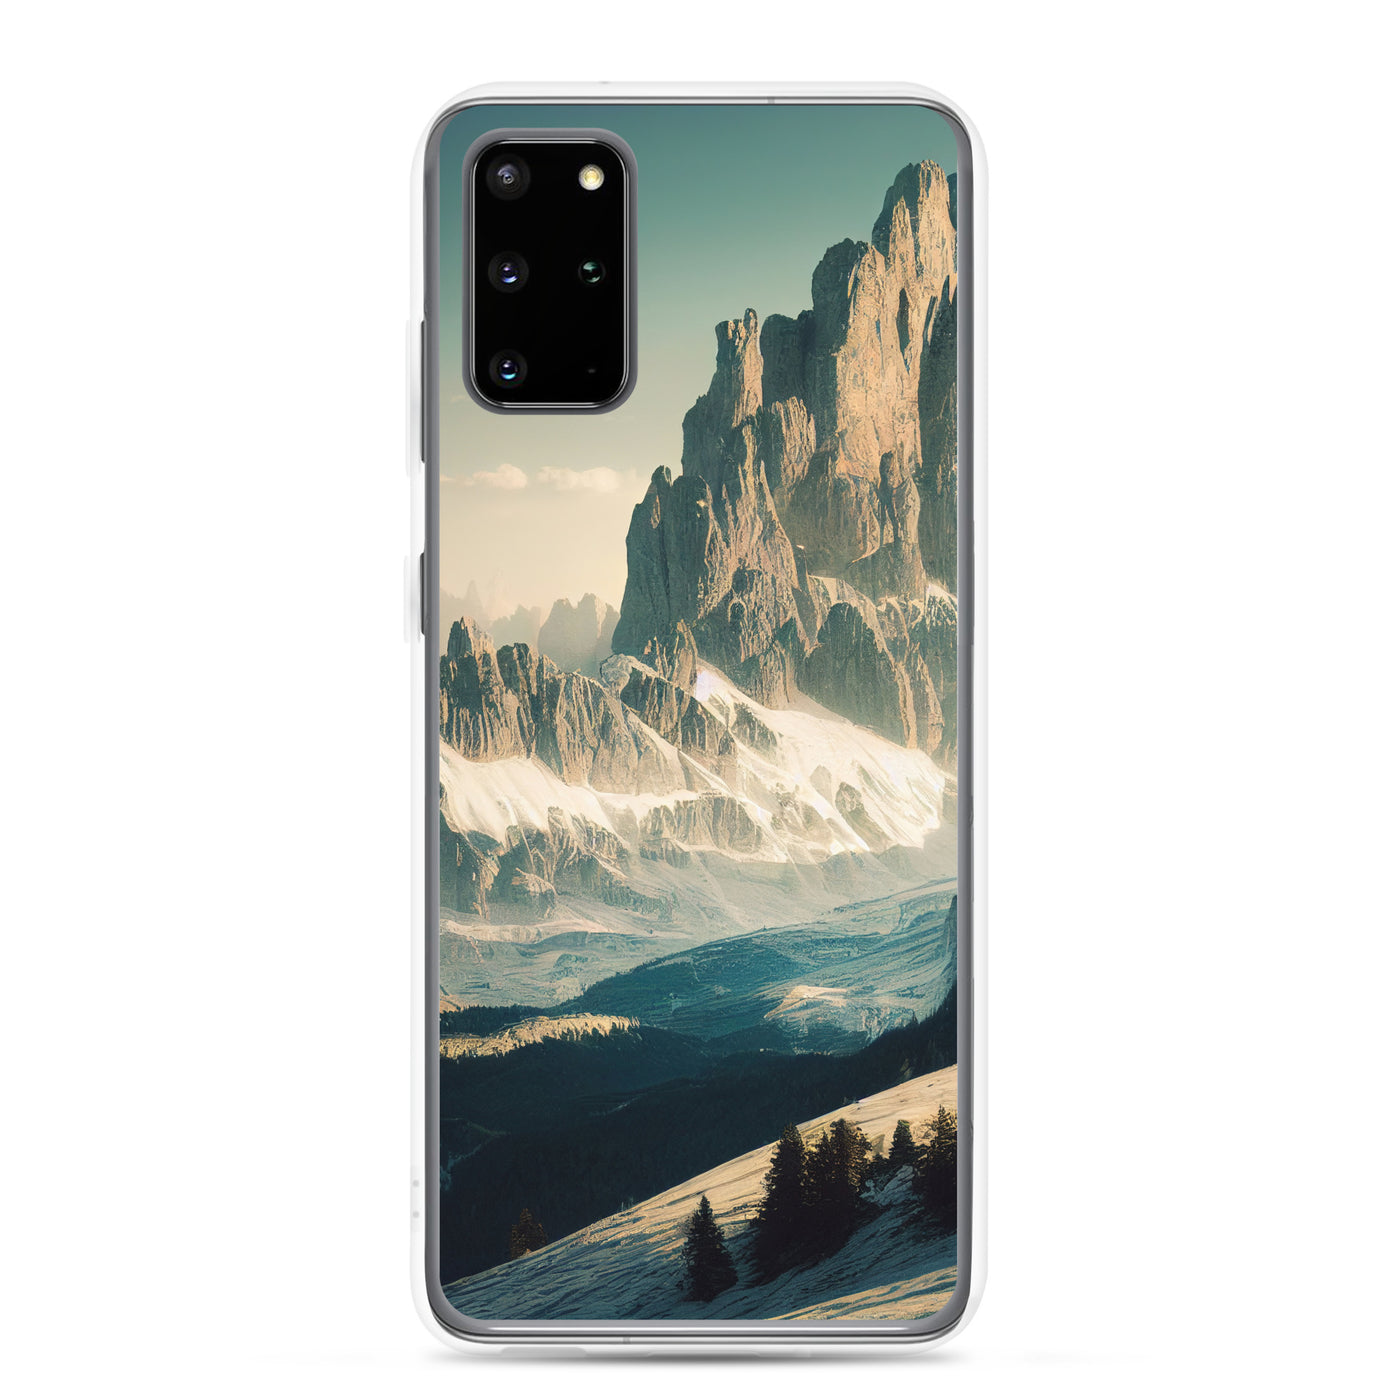 Dolomiten - Landschaftsmalerei - Samsung Schutzhülle (durchsichtig) berge xxx Samsung Galaxy S20 Plus